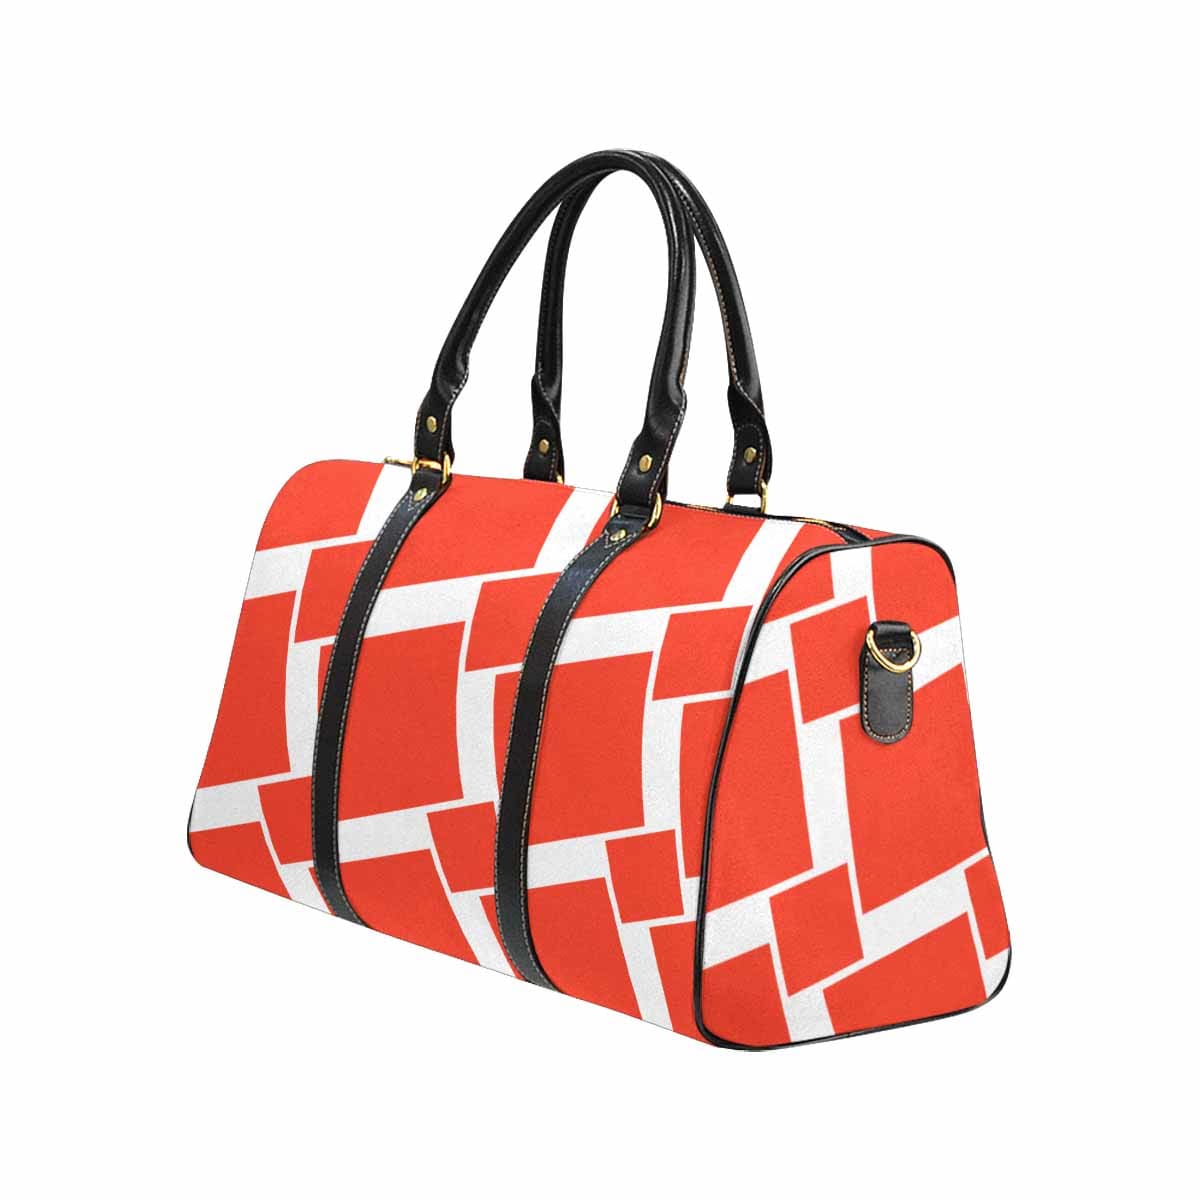 Travel Bag Adjustable Shoulder Strap Carry On Bag - Bags | Travel Bags